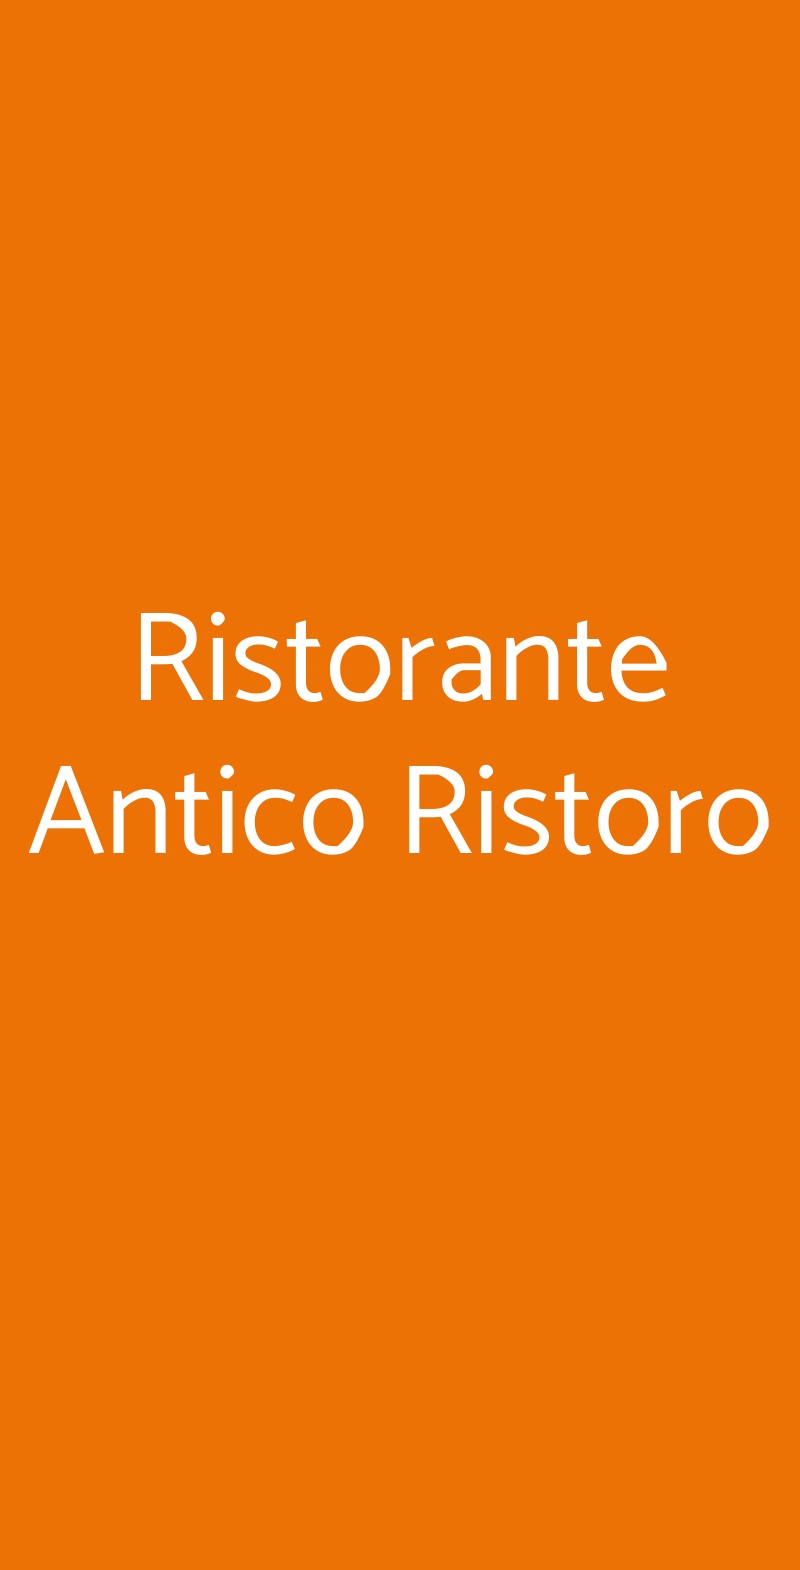 Ristorante Antico Ristoro Venezia menù 1 pagina